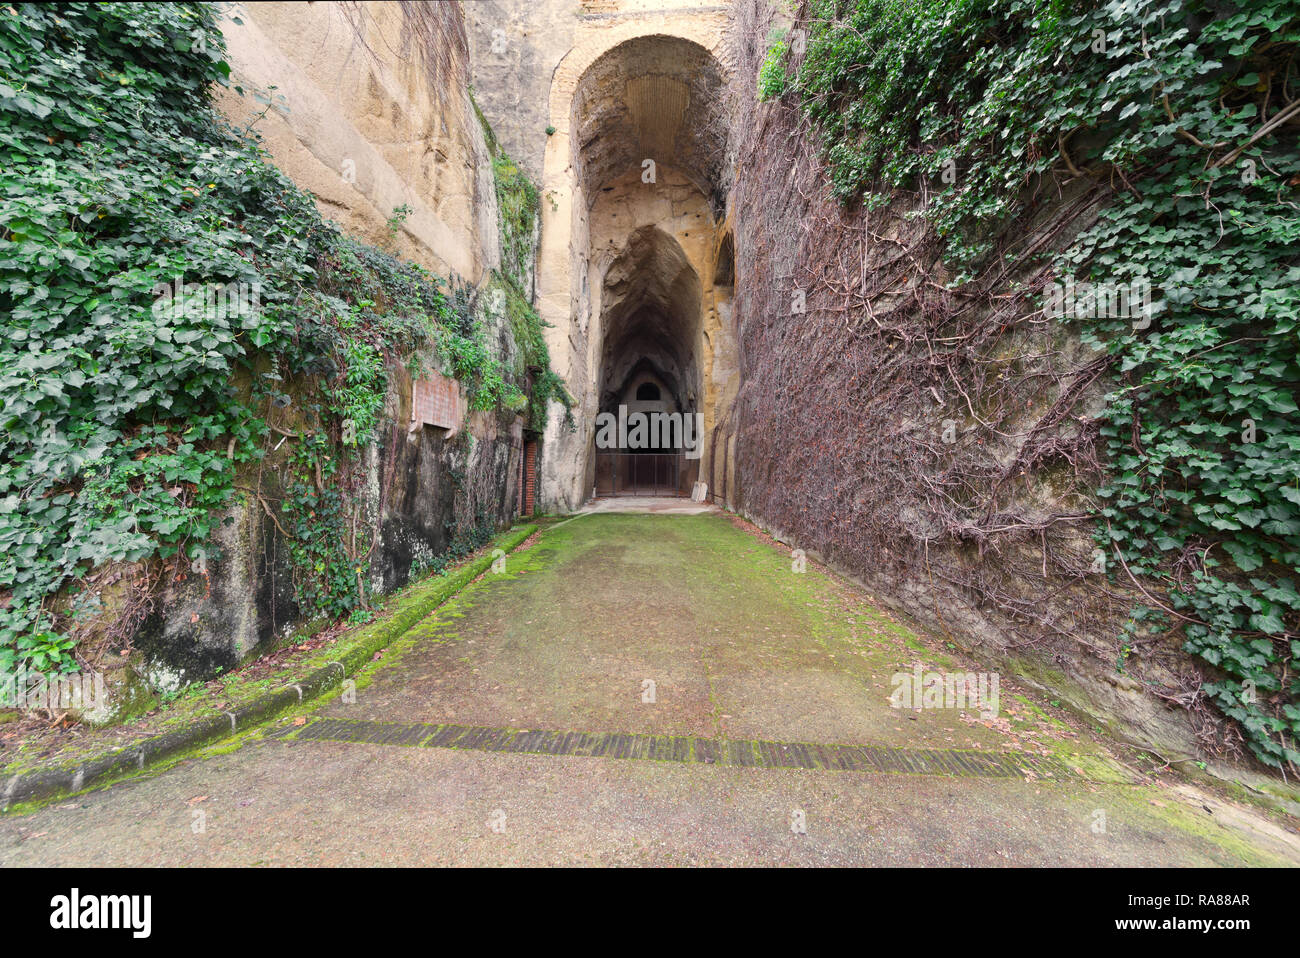 La entrada de la Crypta Neapolitana romano, un antiguo túnel que conecta Nápoles con Pozzuoli a lo largo de la carretera conocida como la vía Domiziana Foto de stock